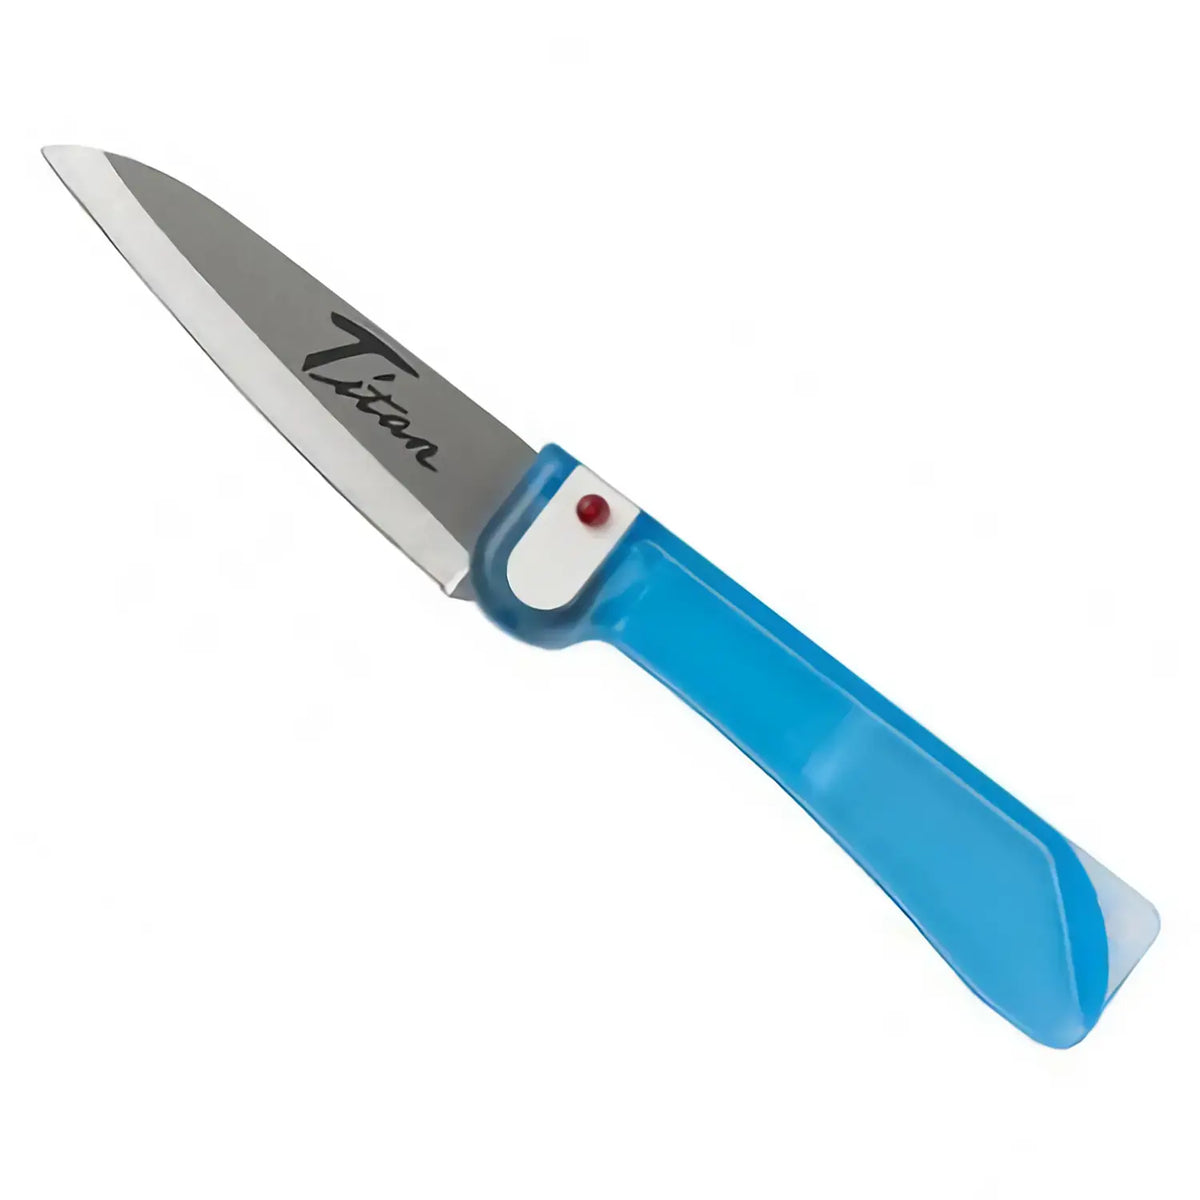 FOREVER Titanium Hybrid Folding Knife